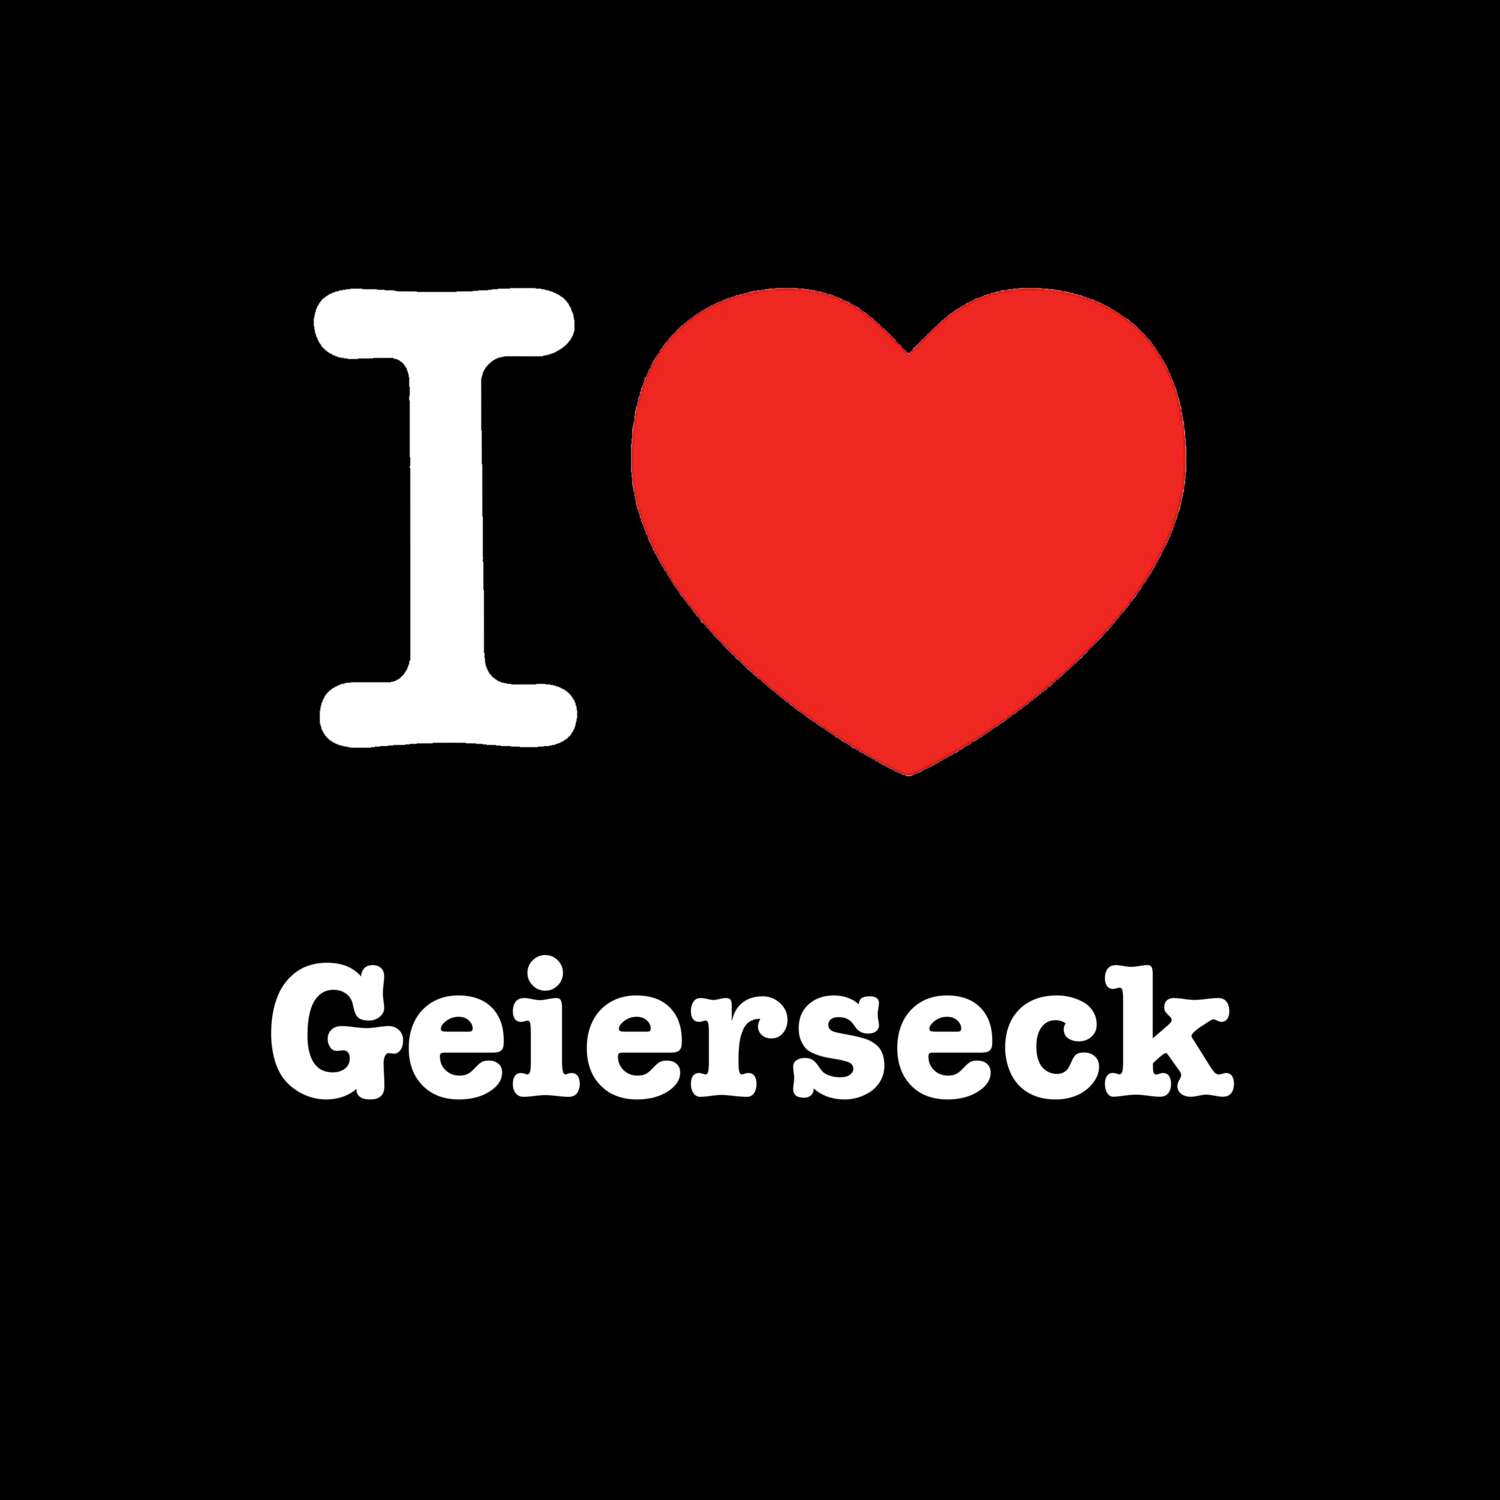 Geierseck T-Shirt »I love«